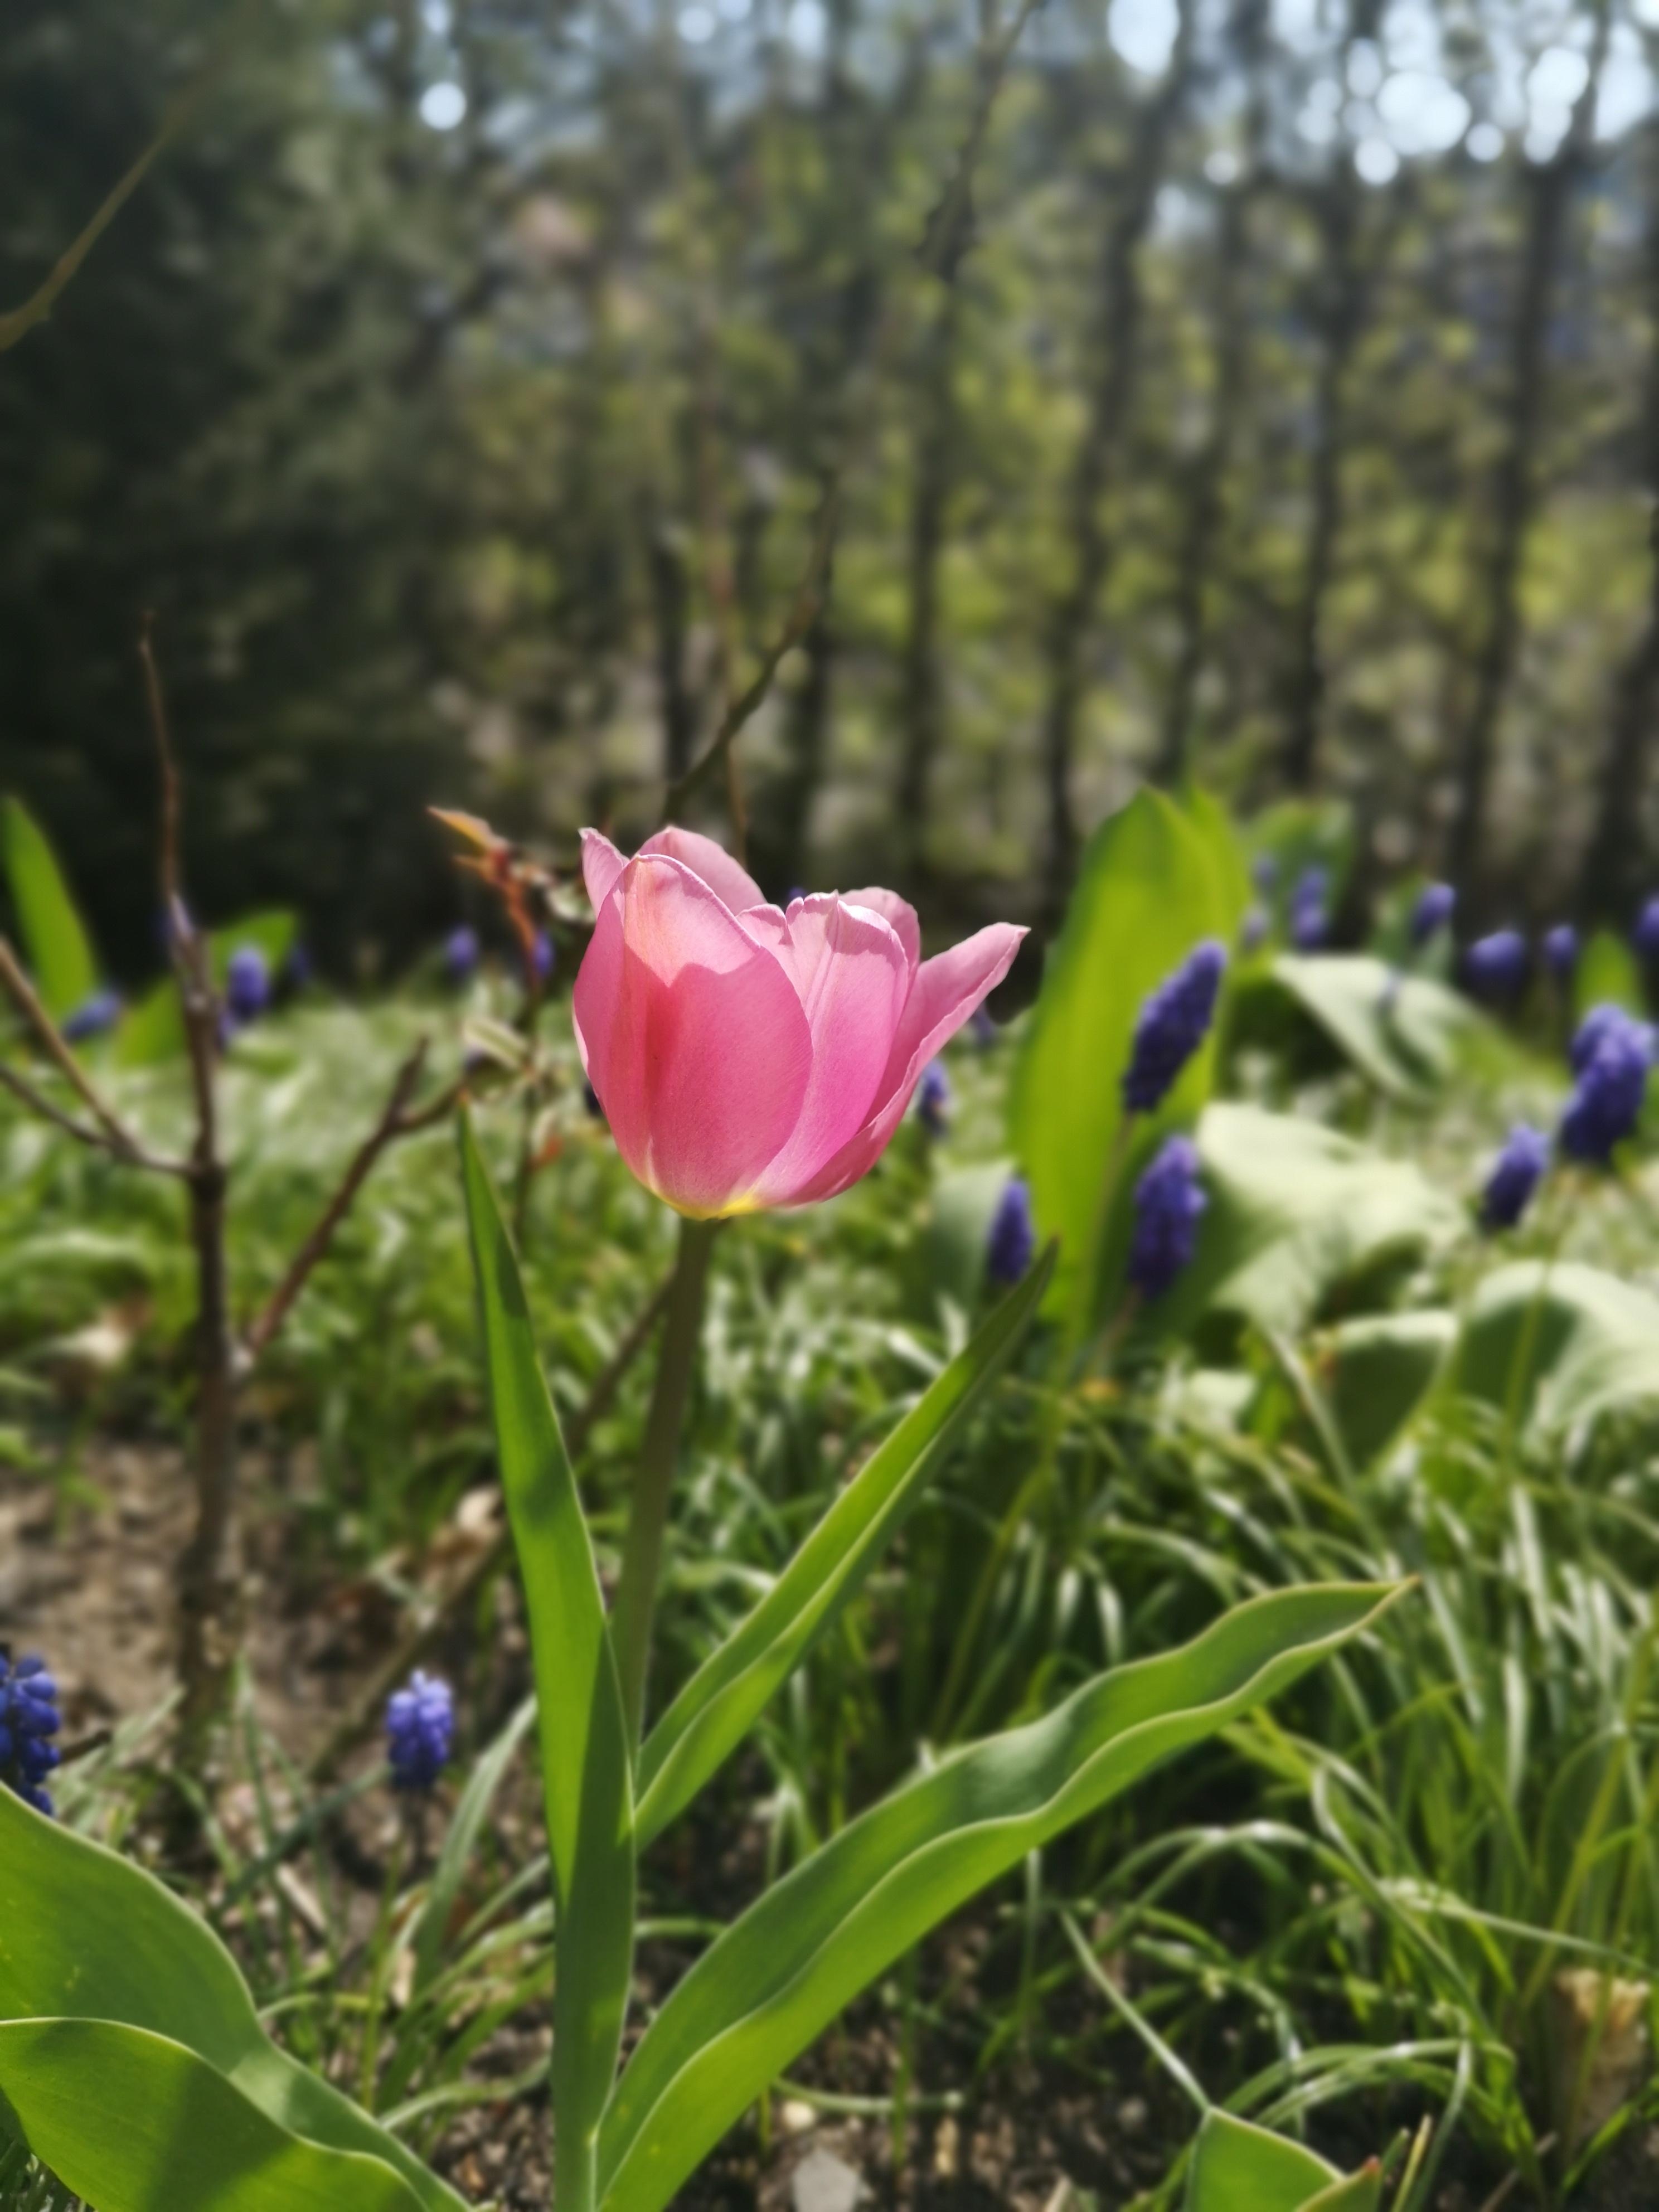 Du bist die schönste im Garten.. #frühling #tulpen #sonne